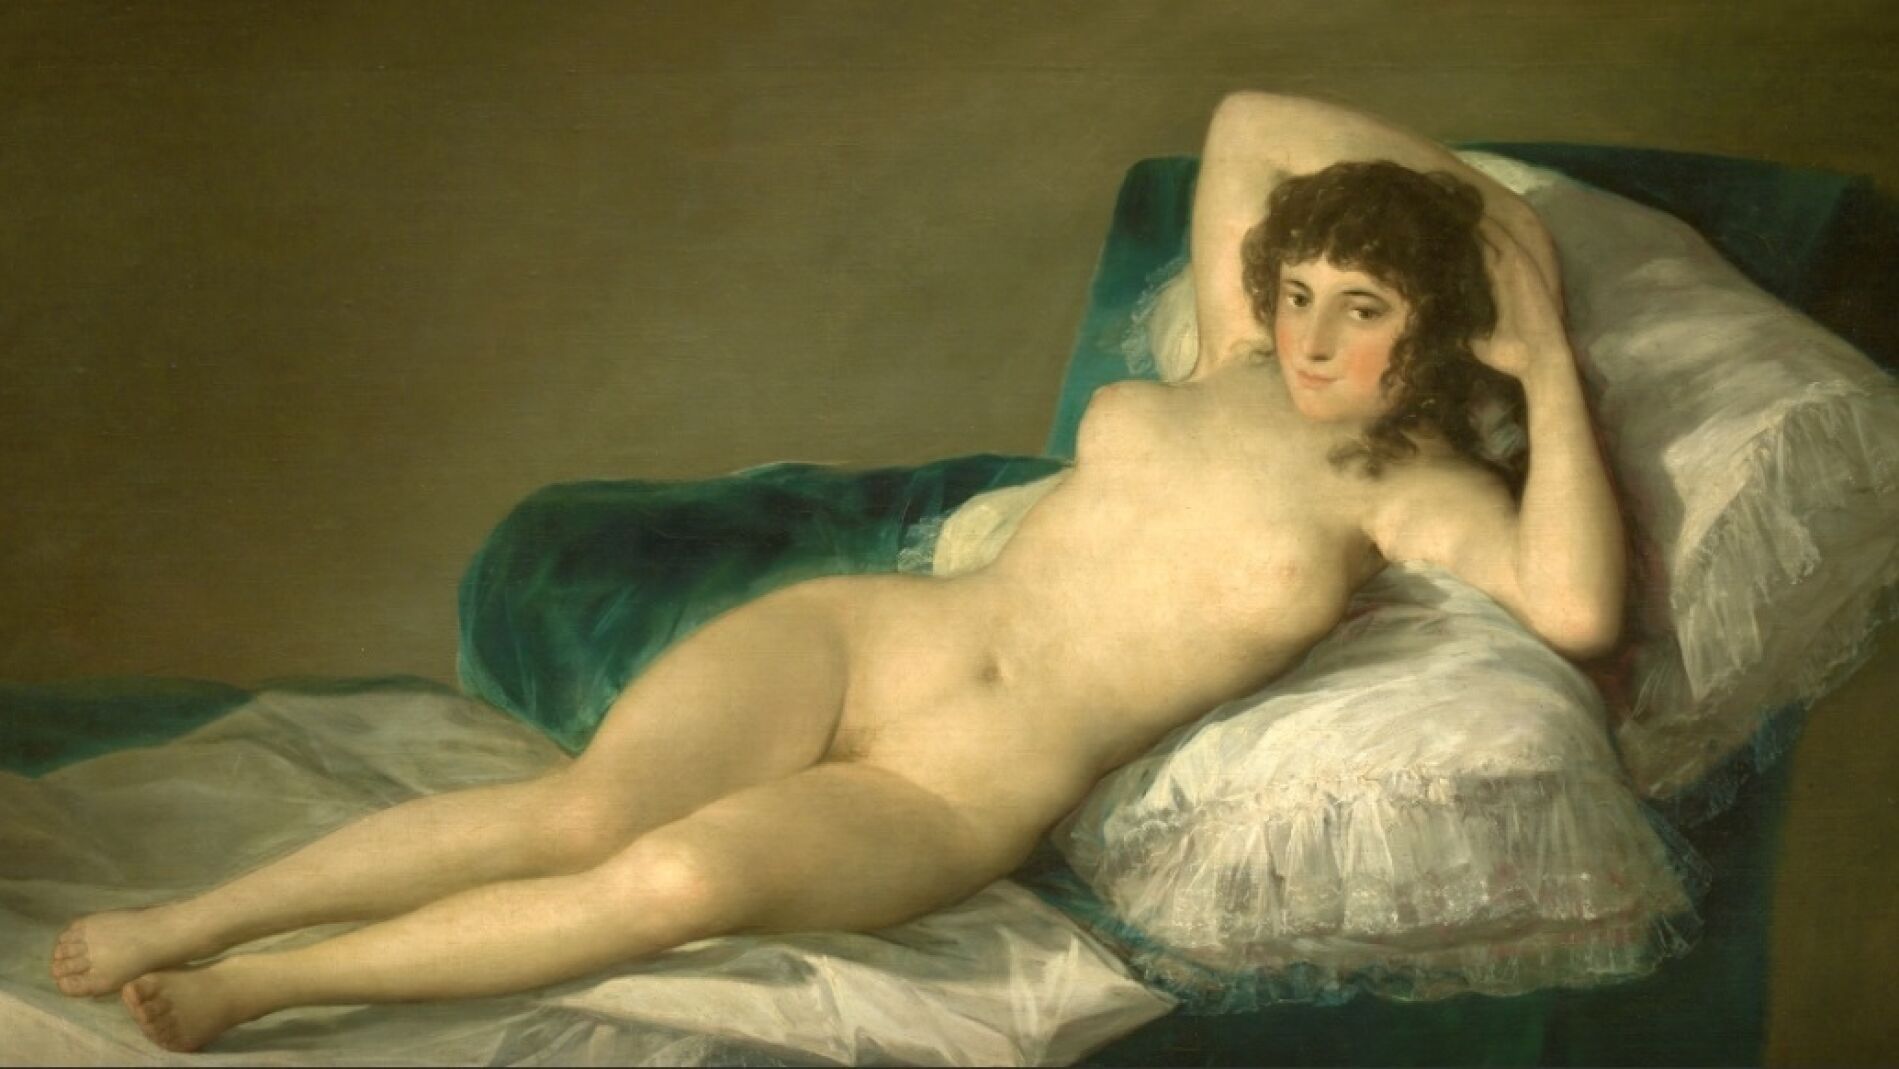 Son ofensivos los frescos de La Capilla Sixtina o La Maja Desnuda de Goya?, ¿hay que censurar el arte?